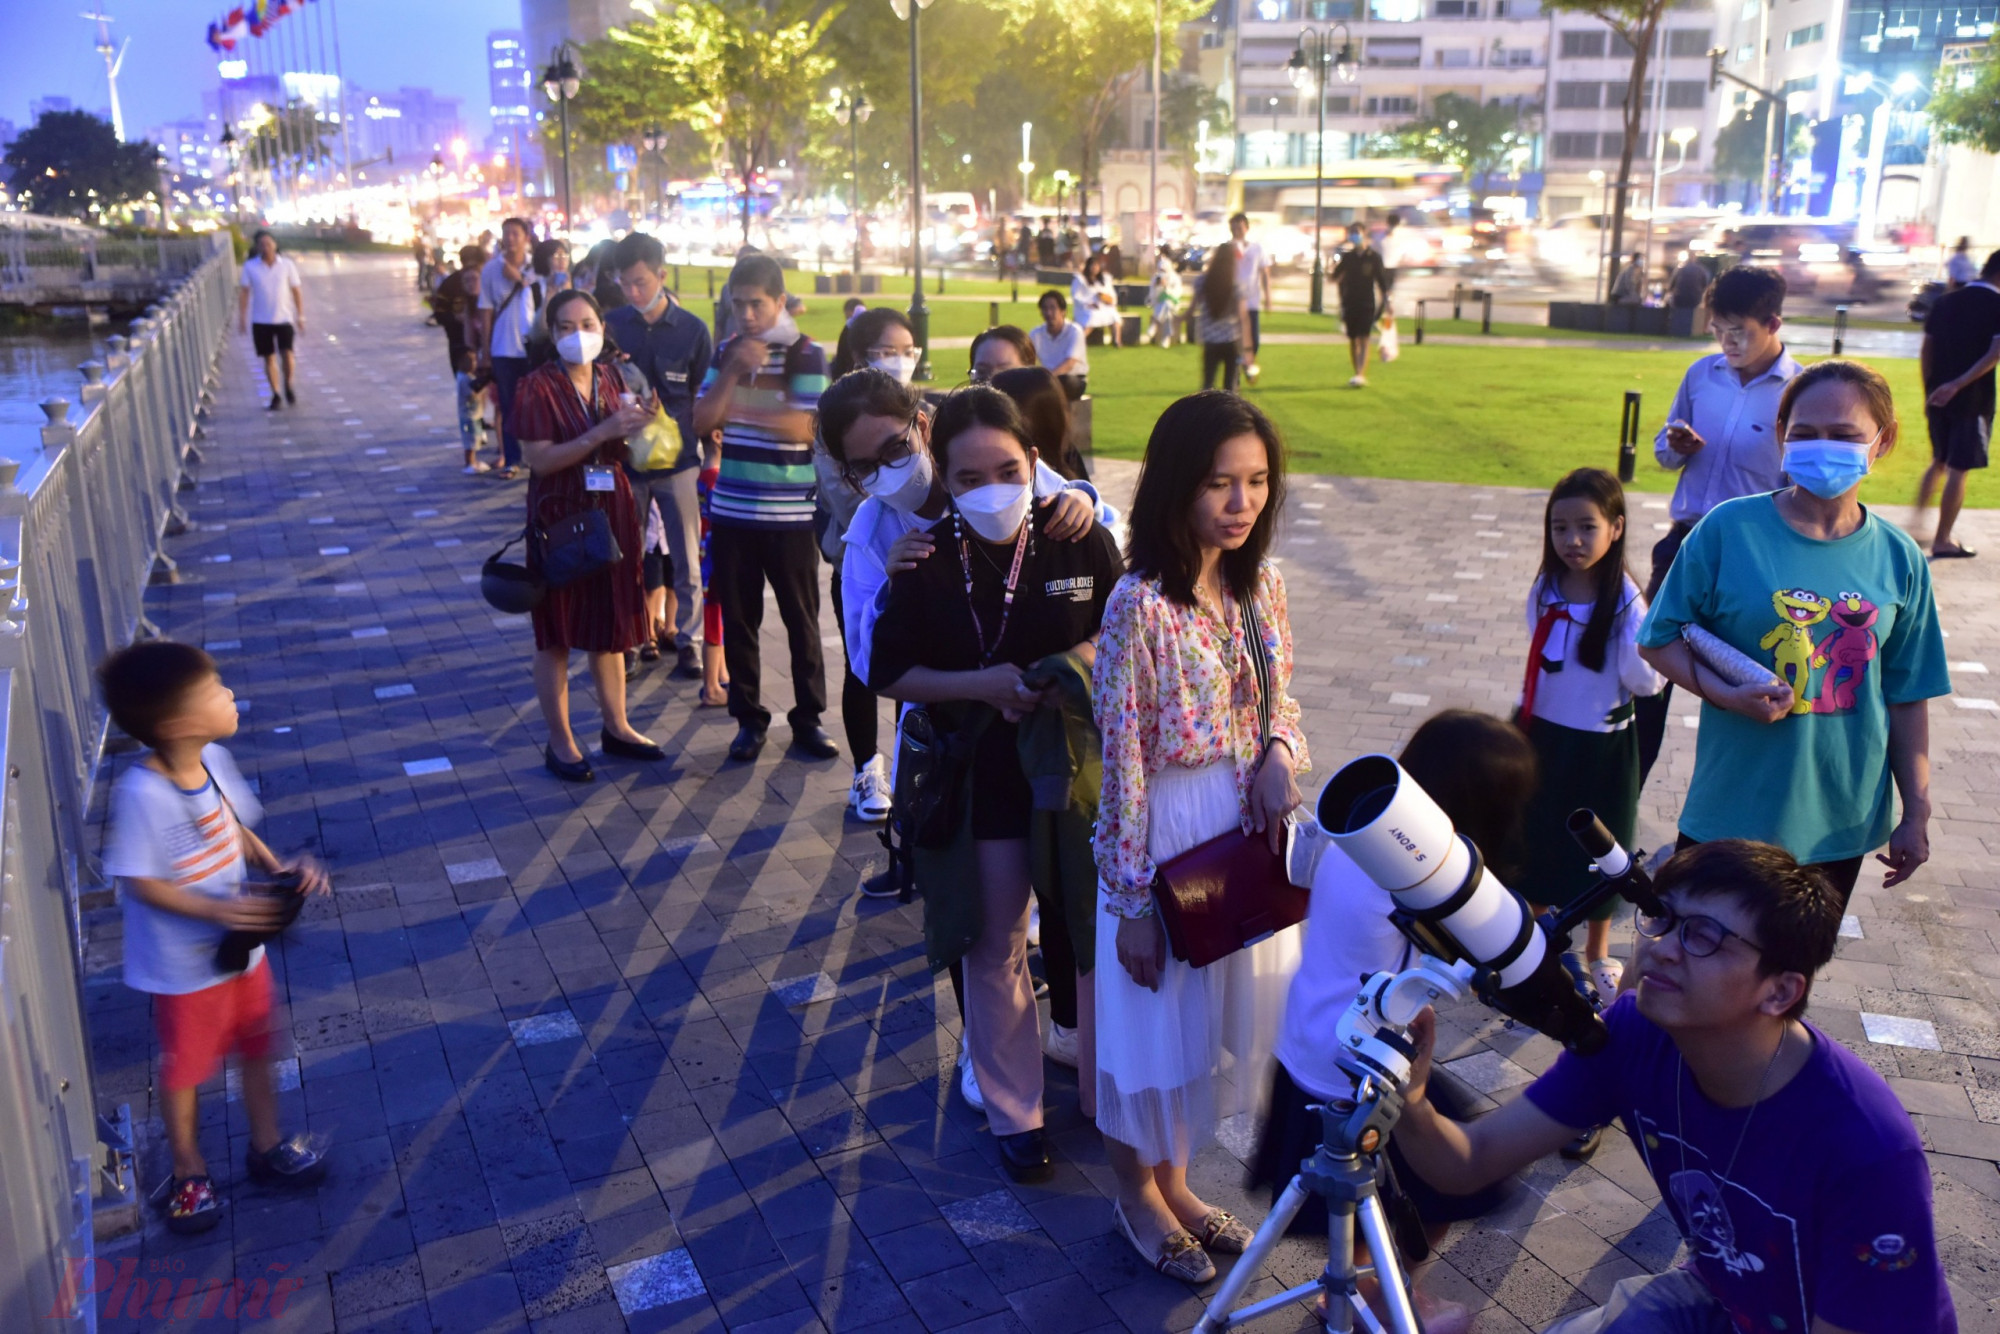 Khu vực công viên bên bờ sông Sài Gòn này có rất đông người dân, đặc biệt là các bạn trẻ chuẩn bị ngắm nguyệt thực hướng Khu đô thị mới Thủ Thiêm. Các thành viên CLB Thiên văn nghiệp dư (HAAC) tập trung về đây, mang theo kính thiên văn, ống nhòm tổ chức cho người dân quan sát hình ảnh “trăng máu”. Có khá đông trẻ em tỏ ra thích thú thử kính thiên văn, ống nhòm của CLB trước giờ xuất hiện nguyệt thực toàn phần tại TP.HCM.